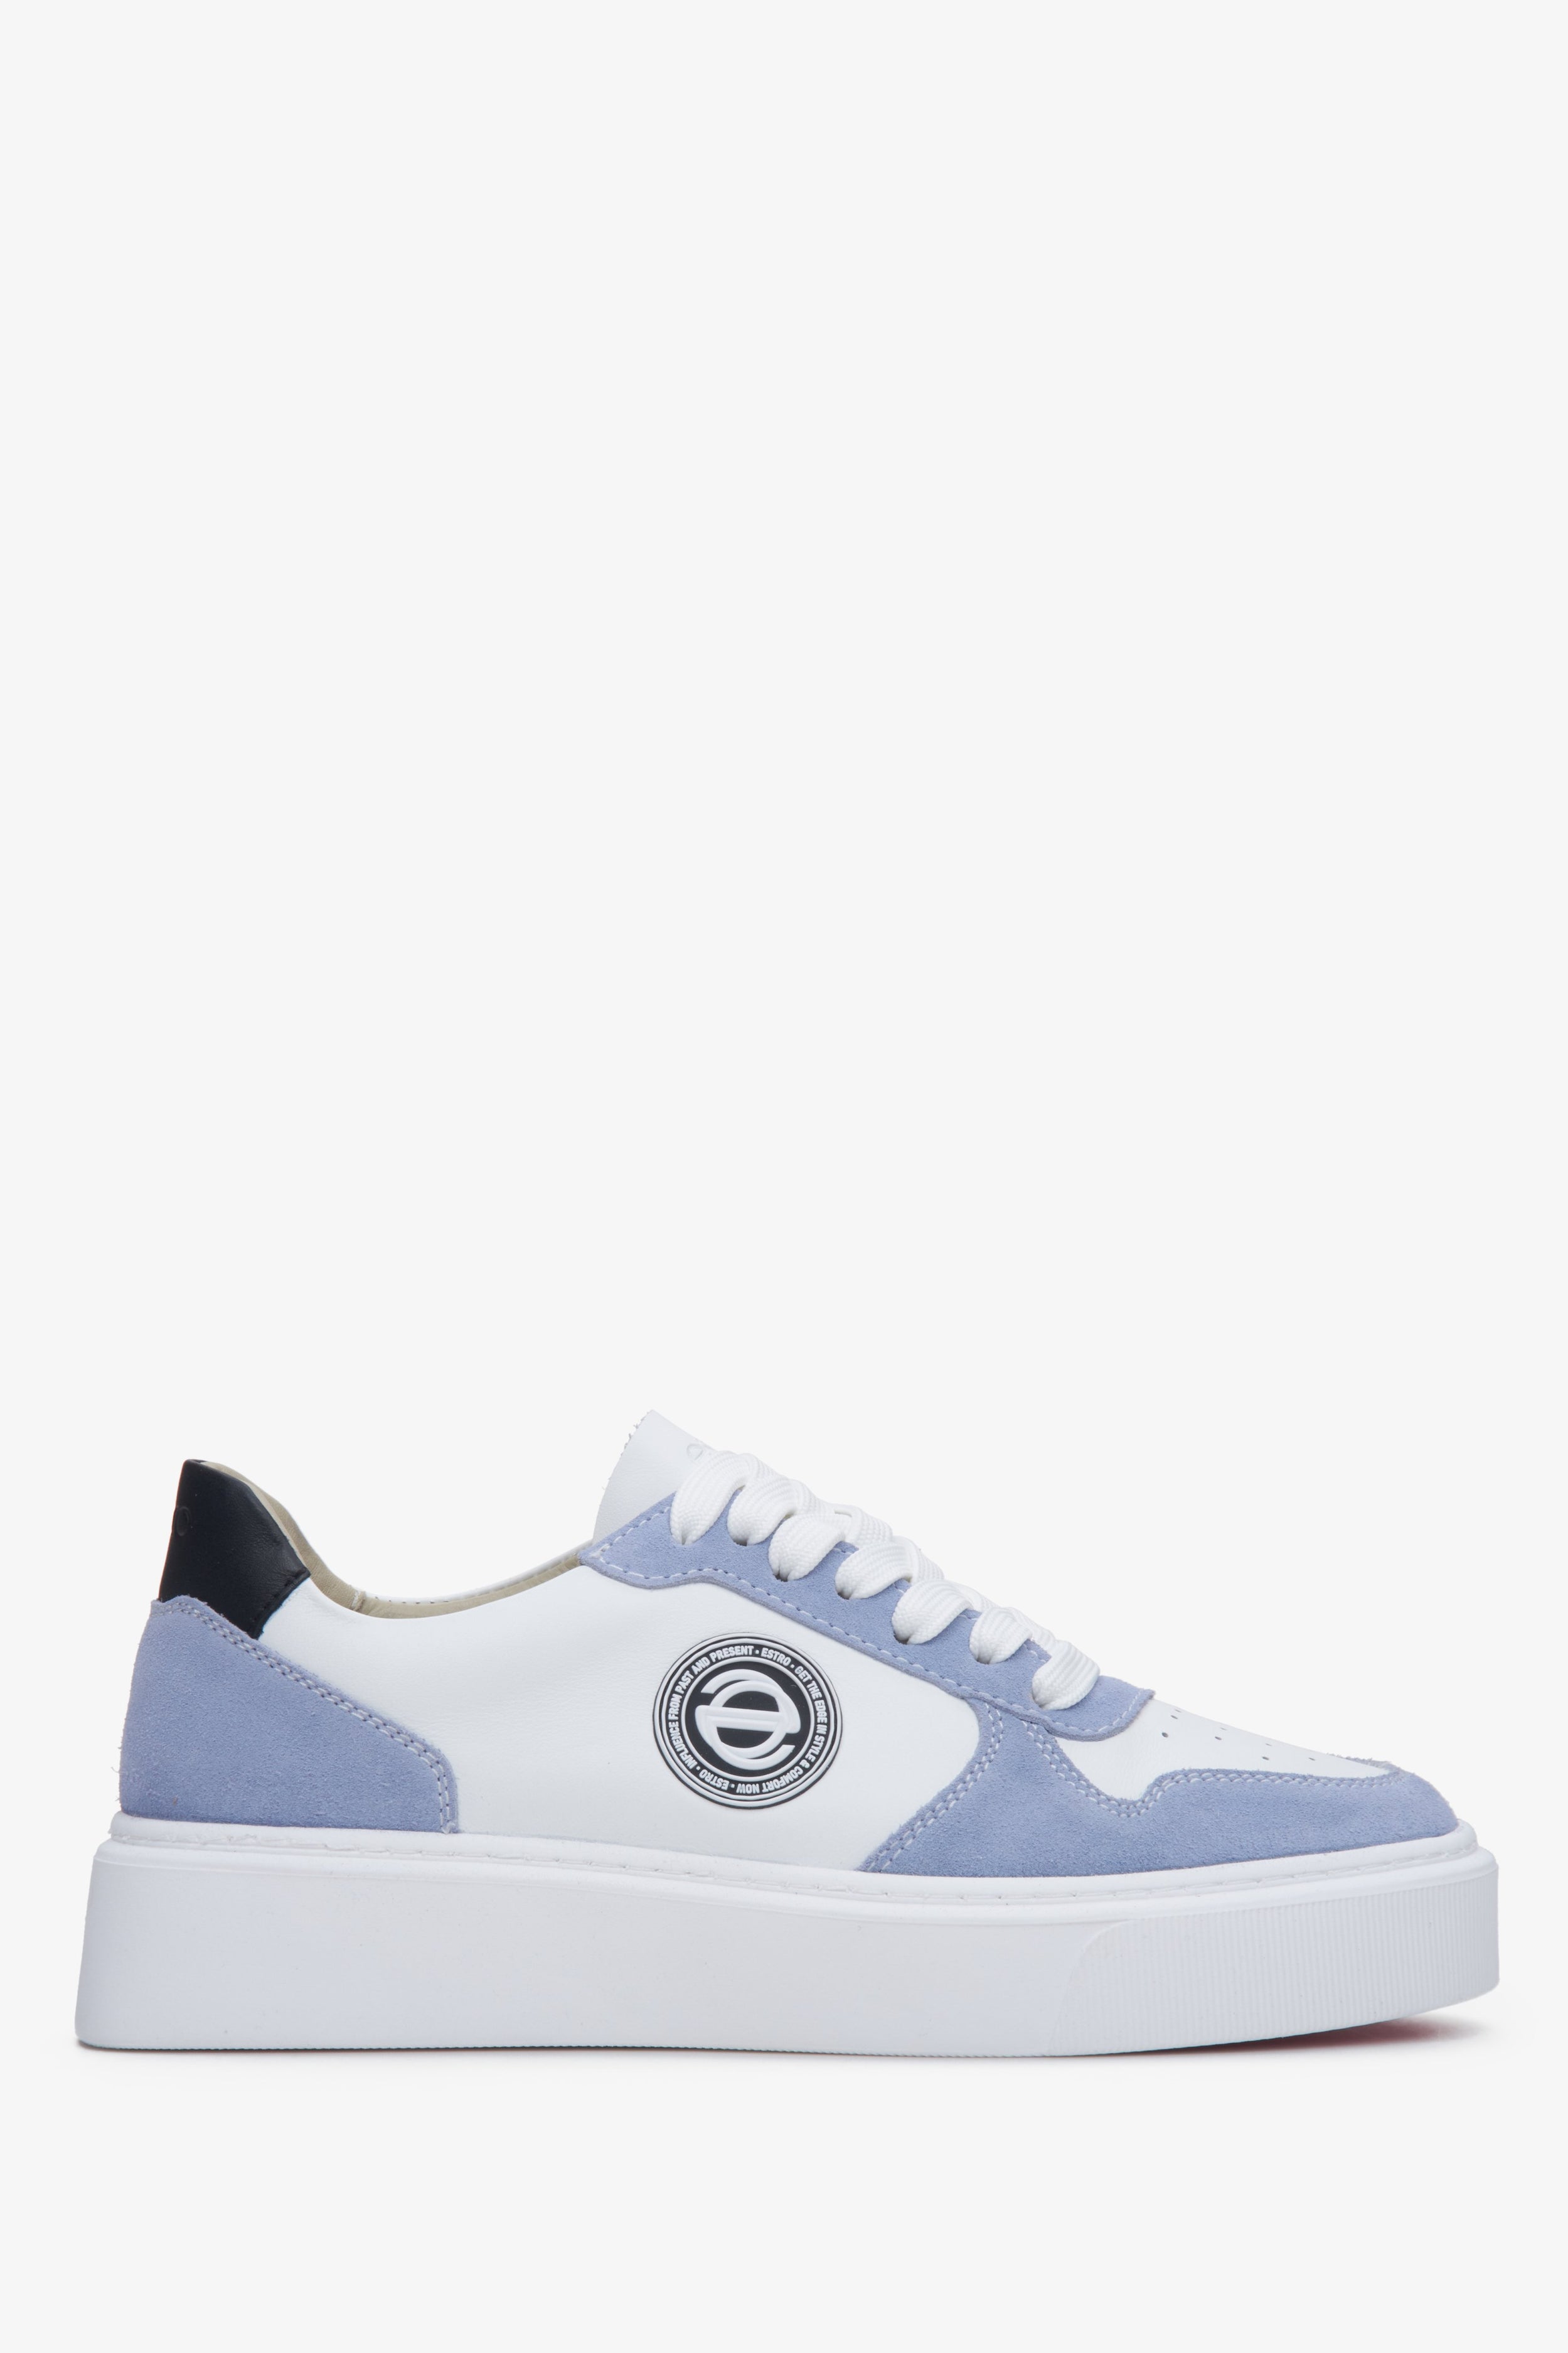 Estro: Niebiesko-białe sneakersy damskie ze skóry i weluru naturalnego